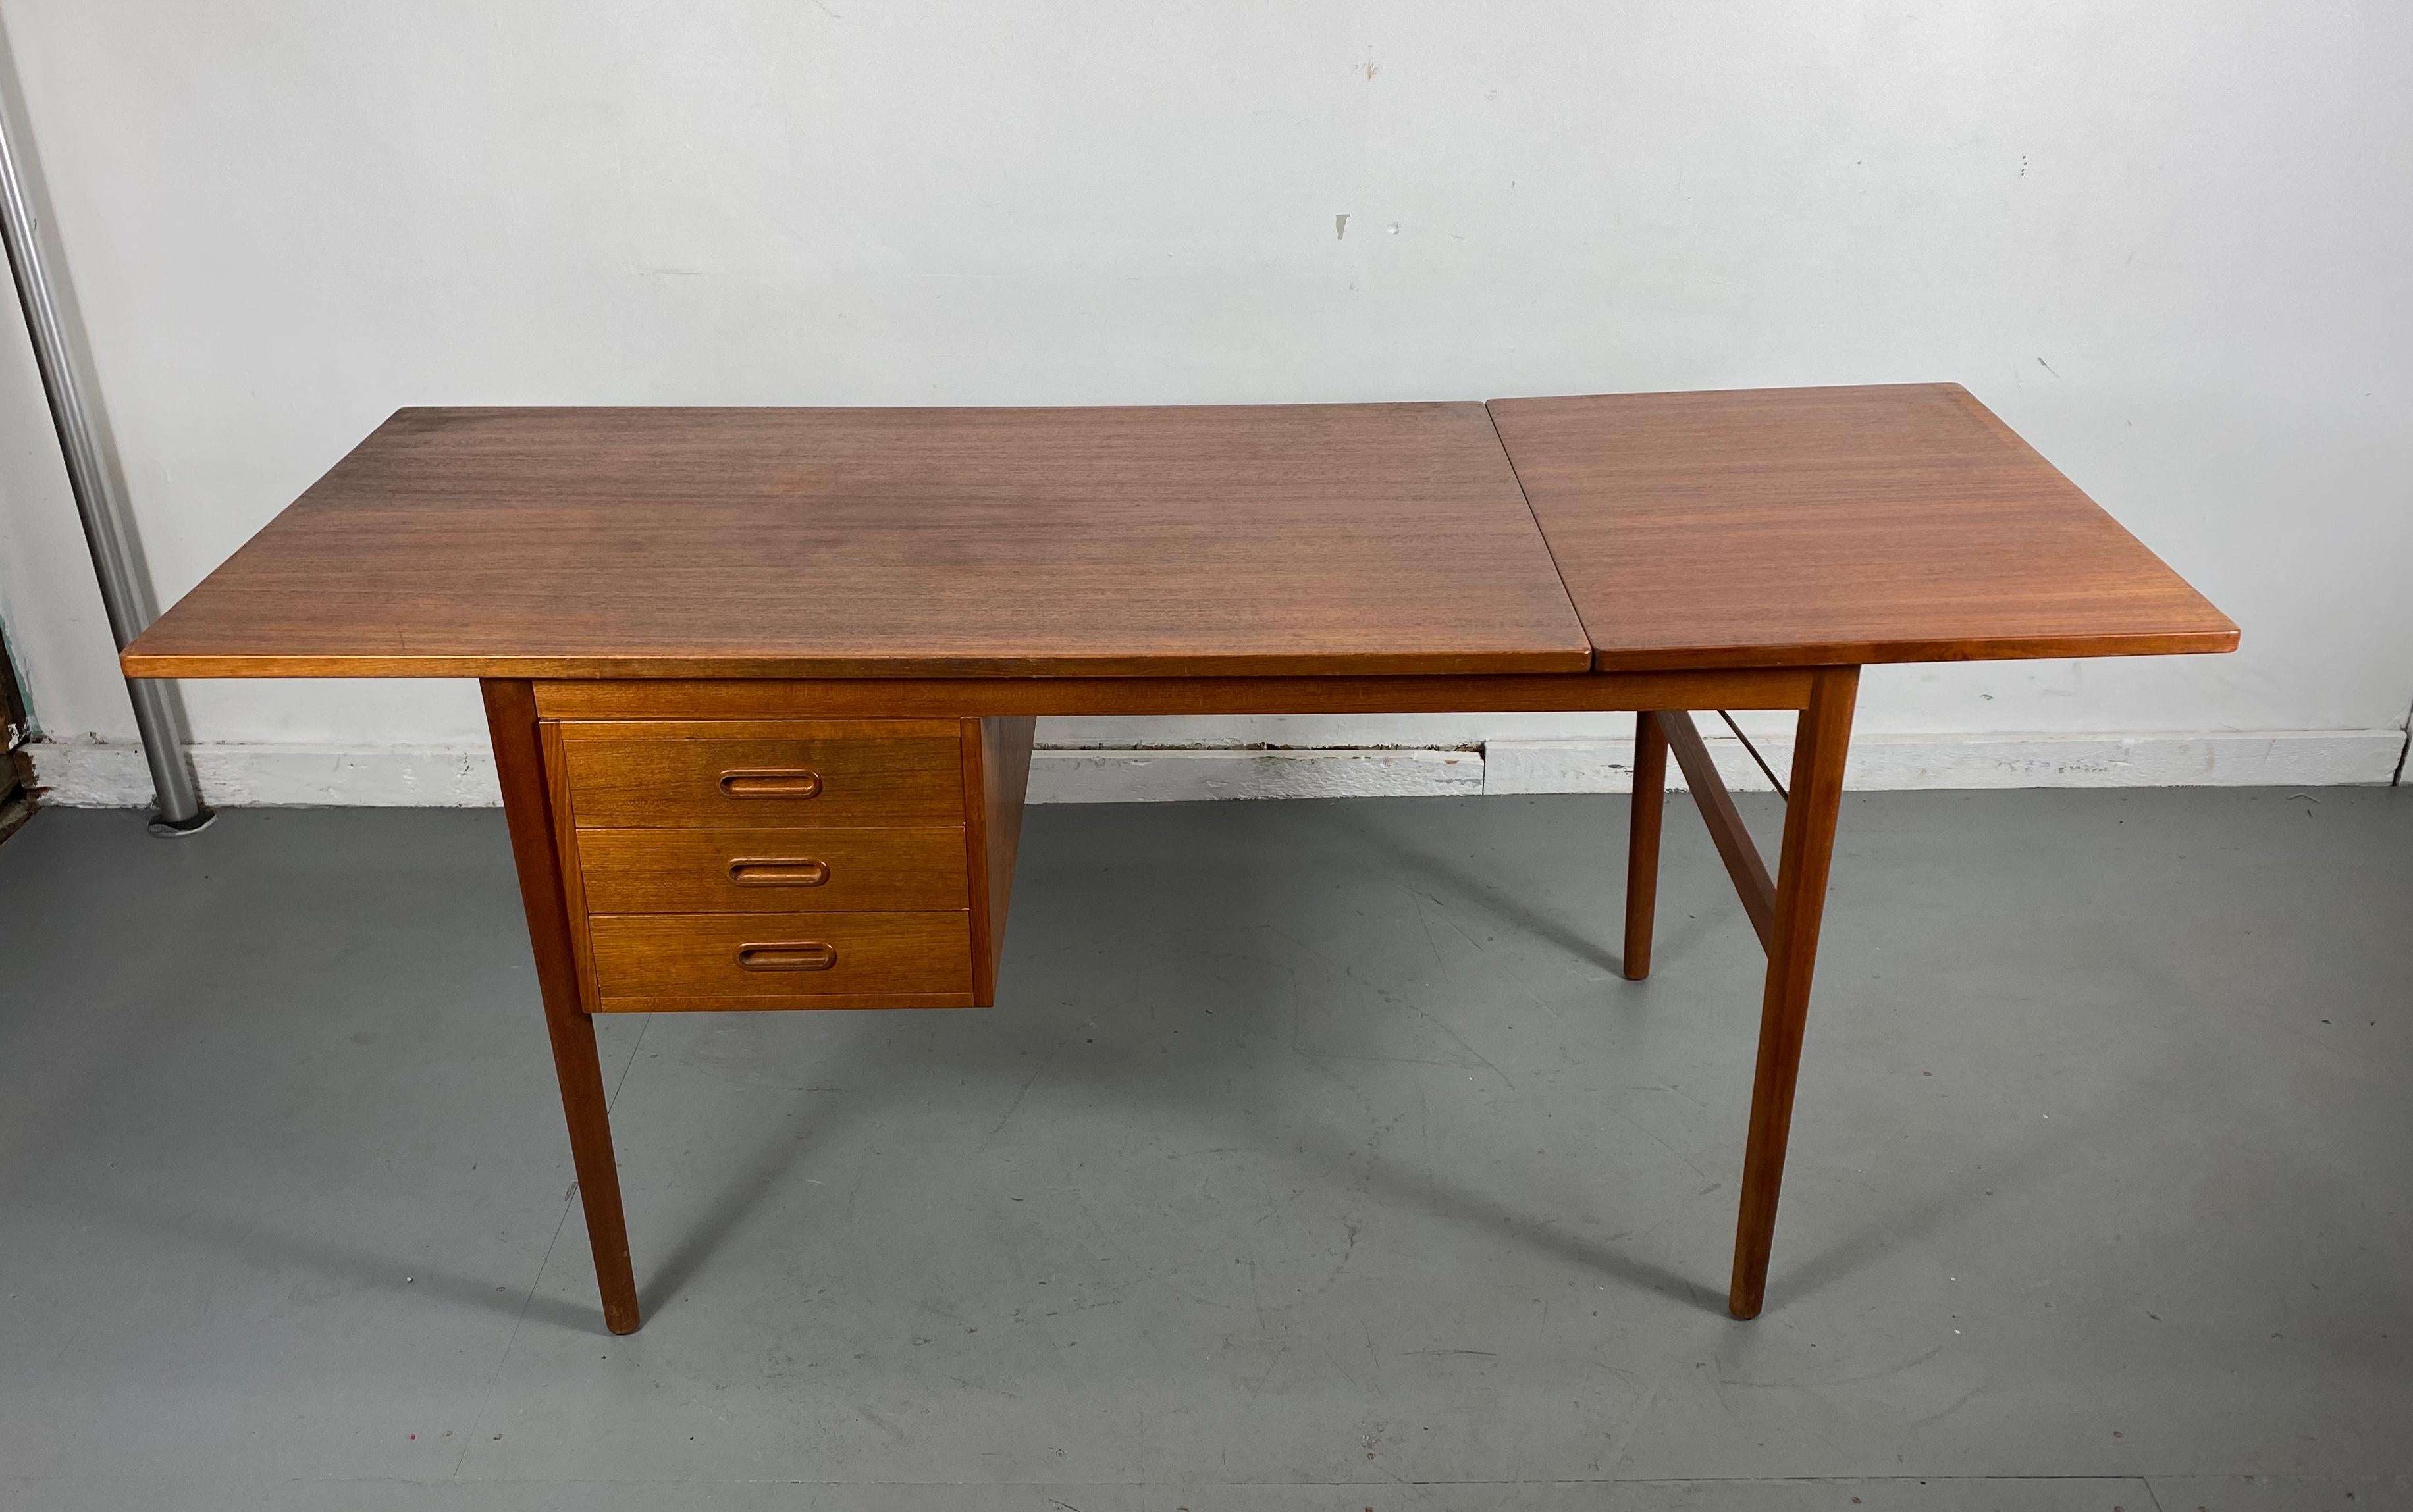 Klassischer Schreibtisch aus Teakholz mit Klappe, Dänemark, Arne Vodder zugeschrieben, großartiges Design. Die verschiebbare Platte ermöglicht eine Erweiterung des Schreibtisches auf eine Breite von 65